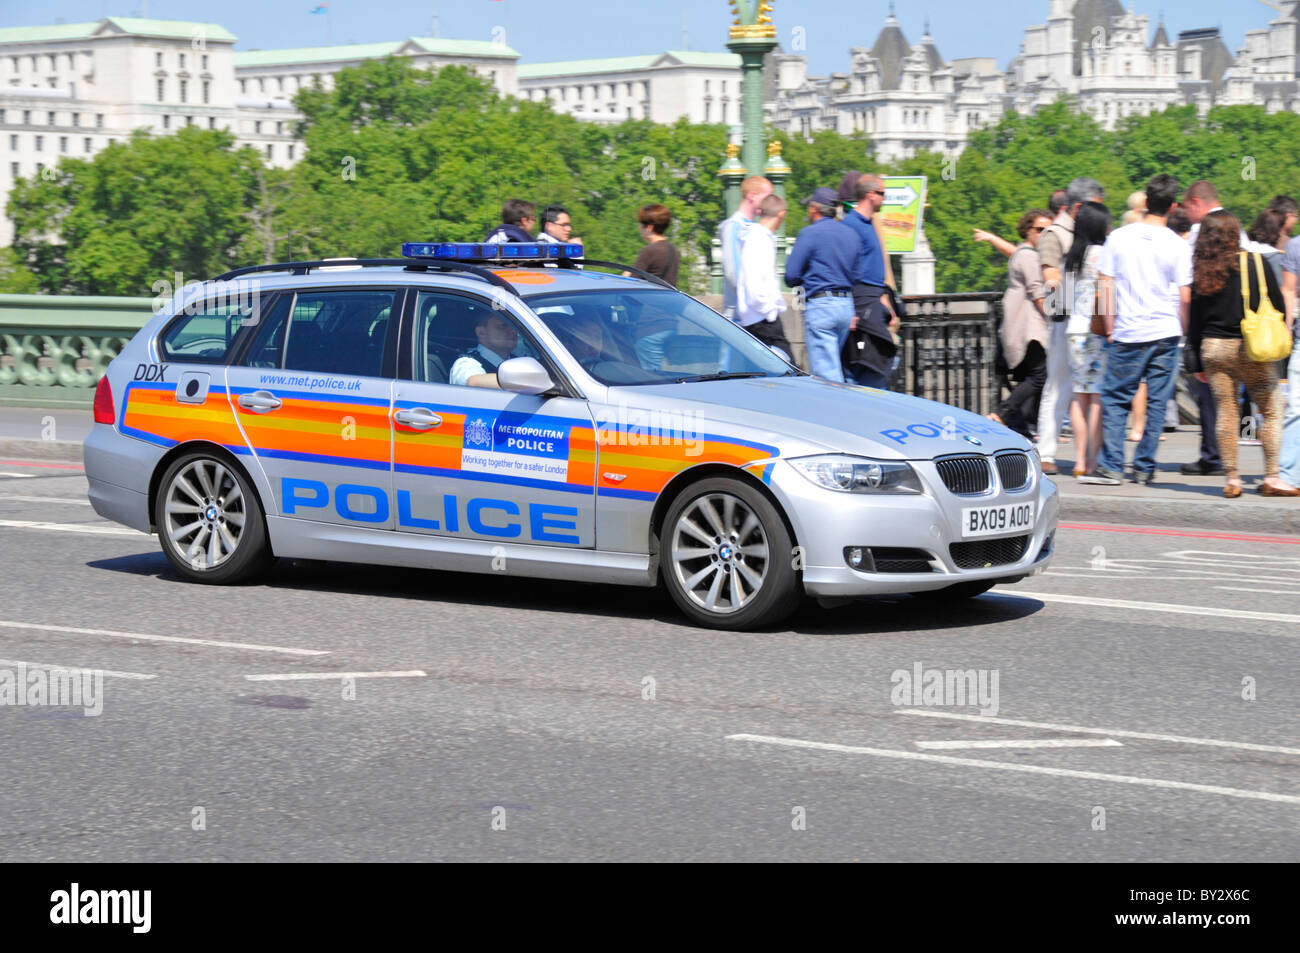 Scène de rue des agents en uniforme dans la région métropolitaine de voiture de police de conduire sur le pont de Westminster avec groupe de touristes au-delà de Londres Angleterre Royaume-uni Banque D'Images